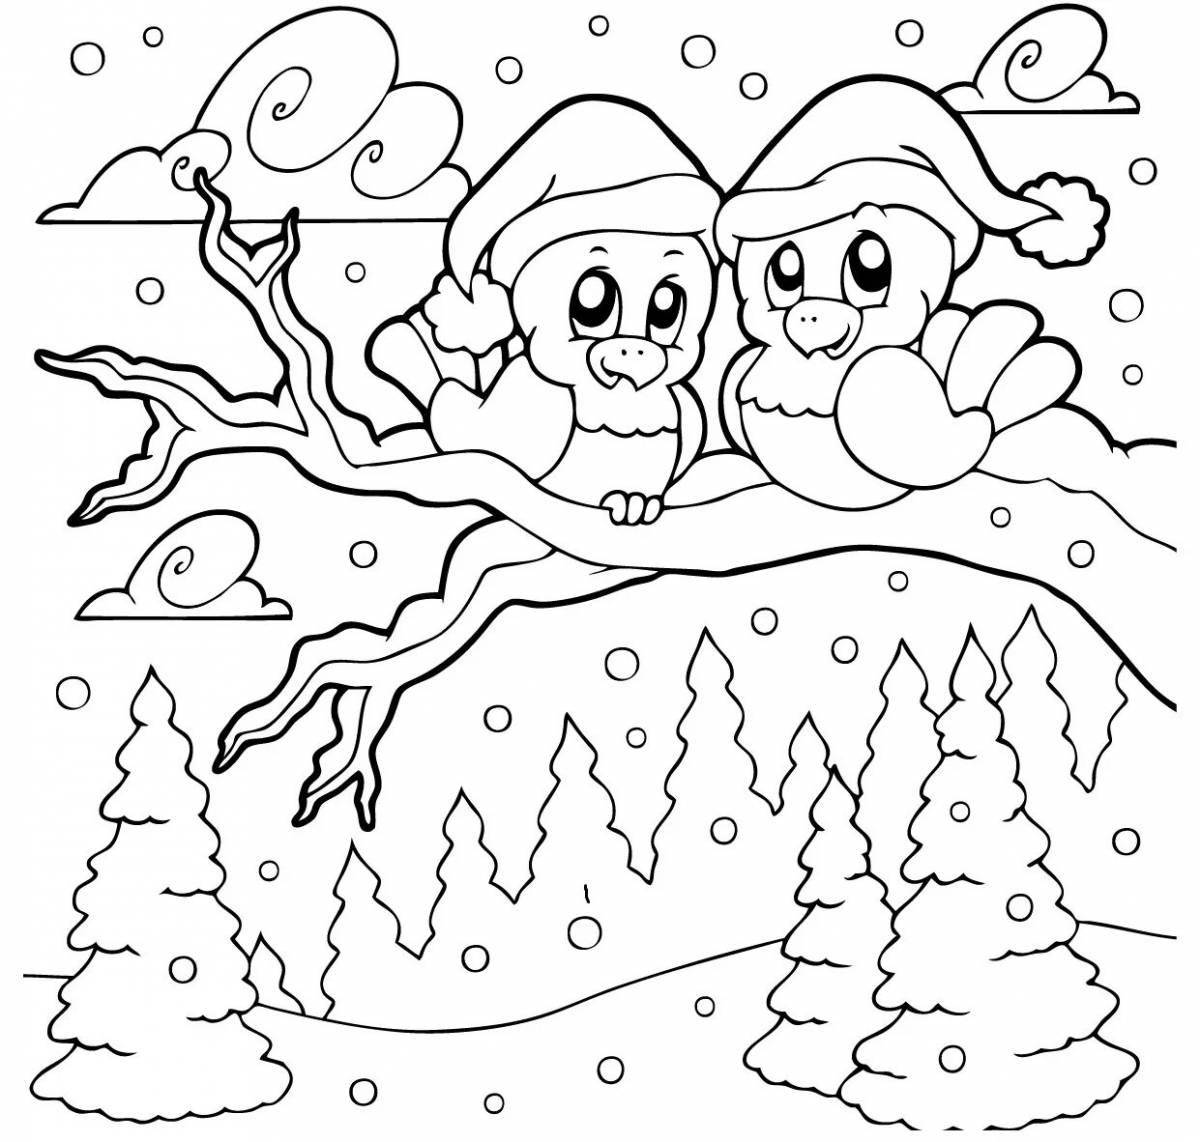 Великолепный зимний пейзаж раскраски для детей 3-4 лет